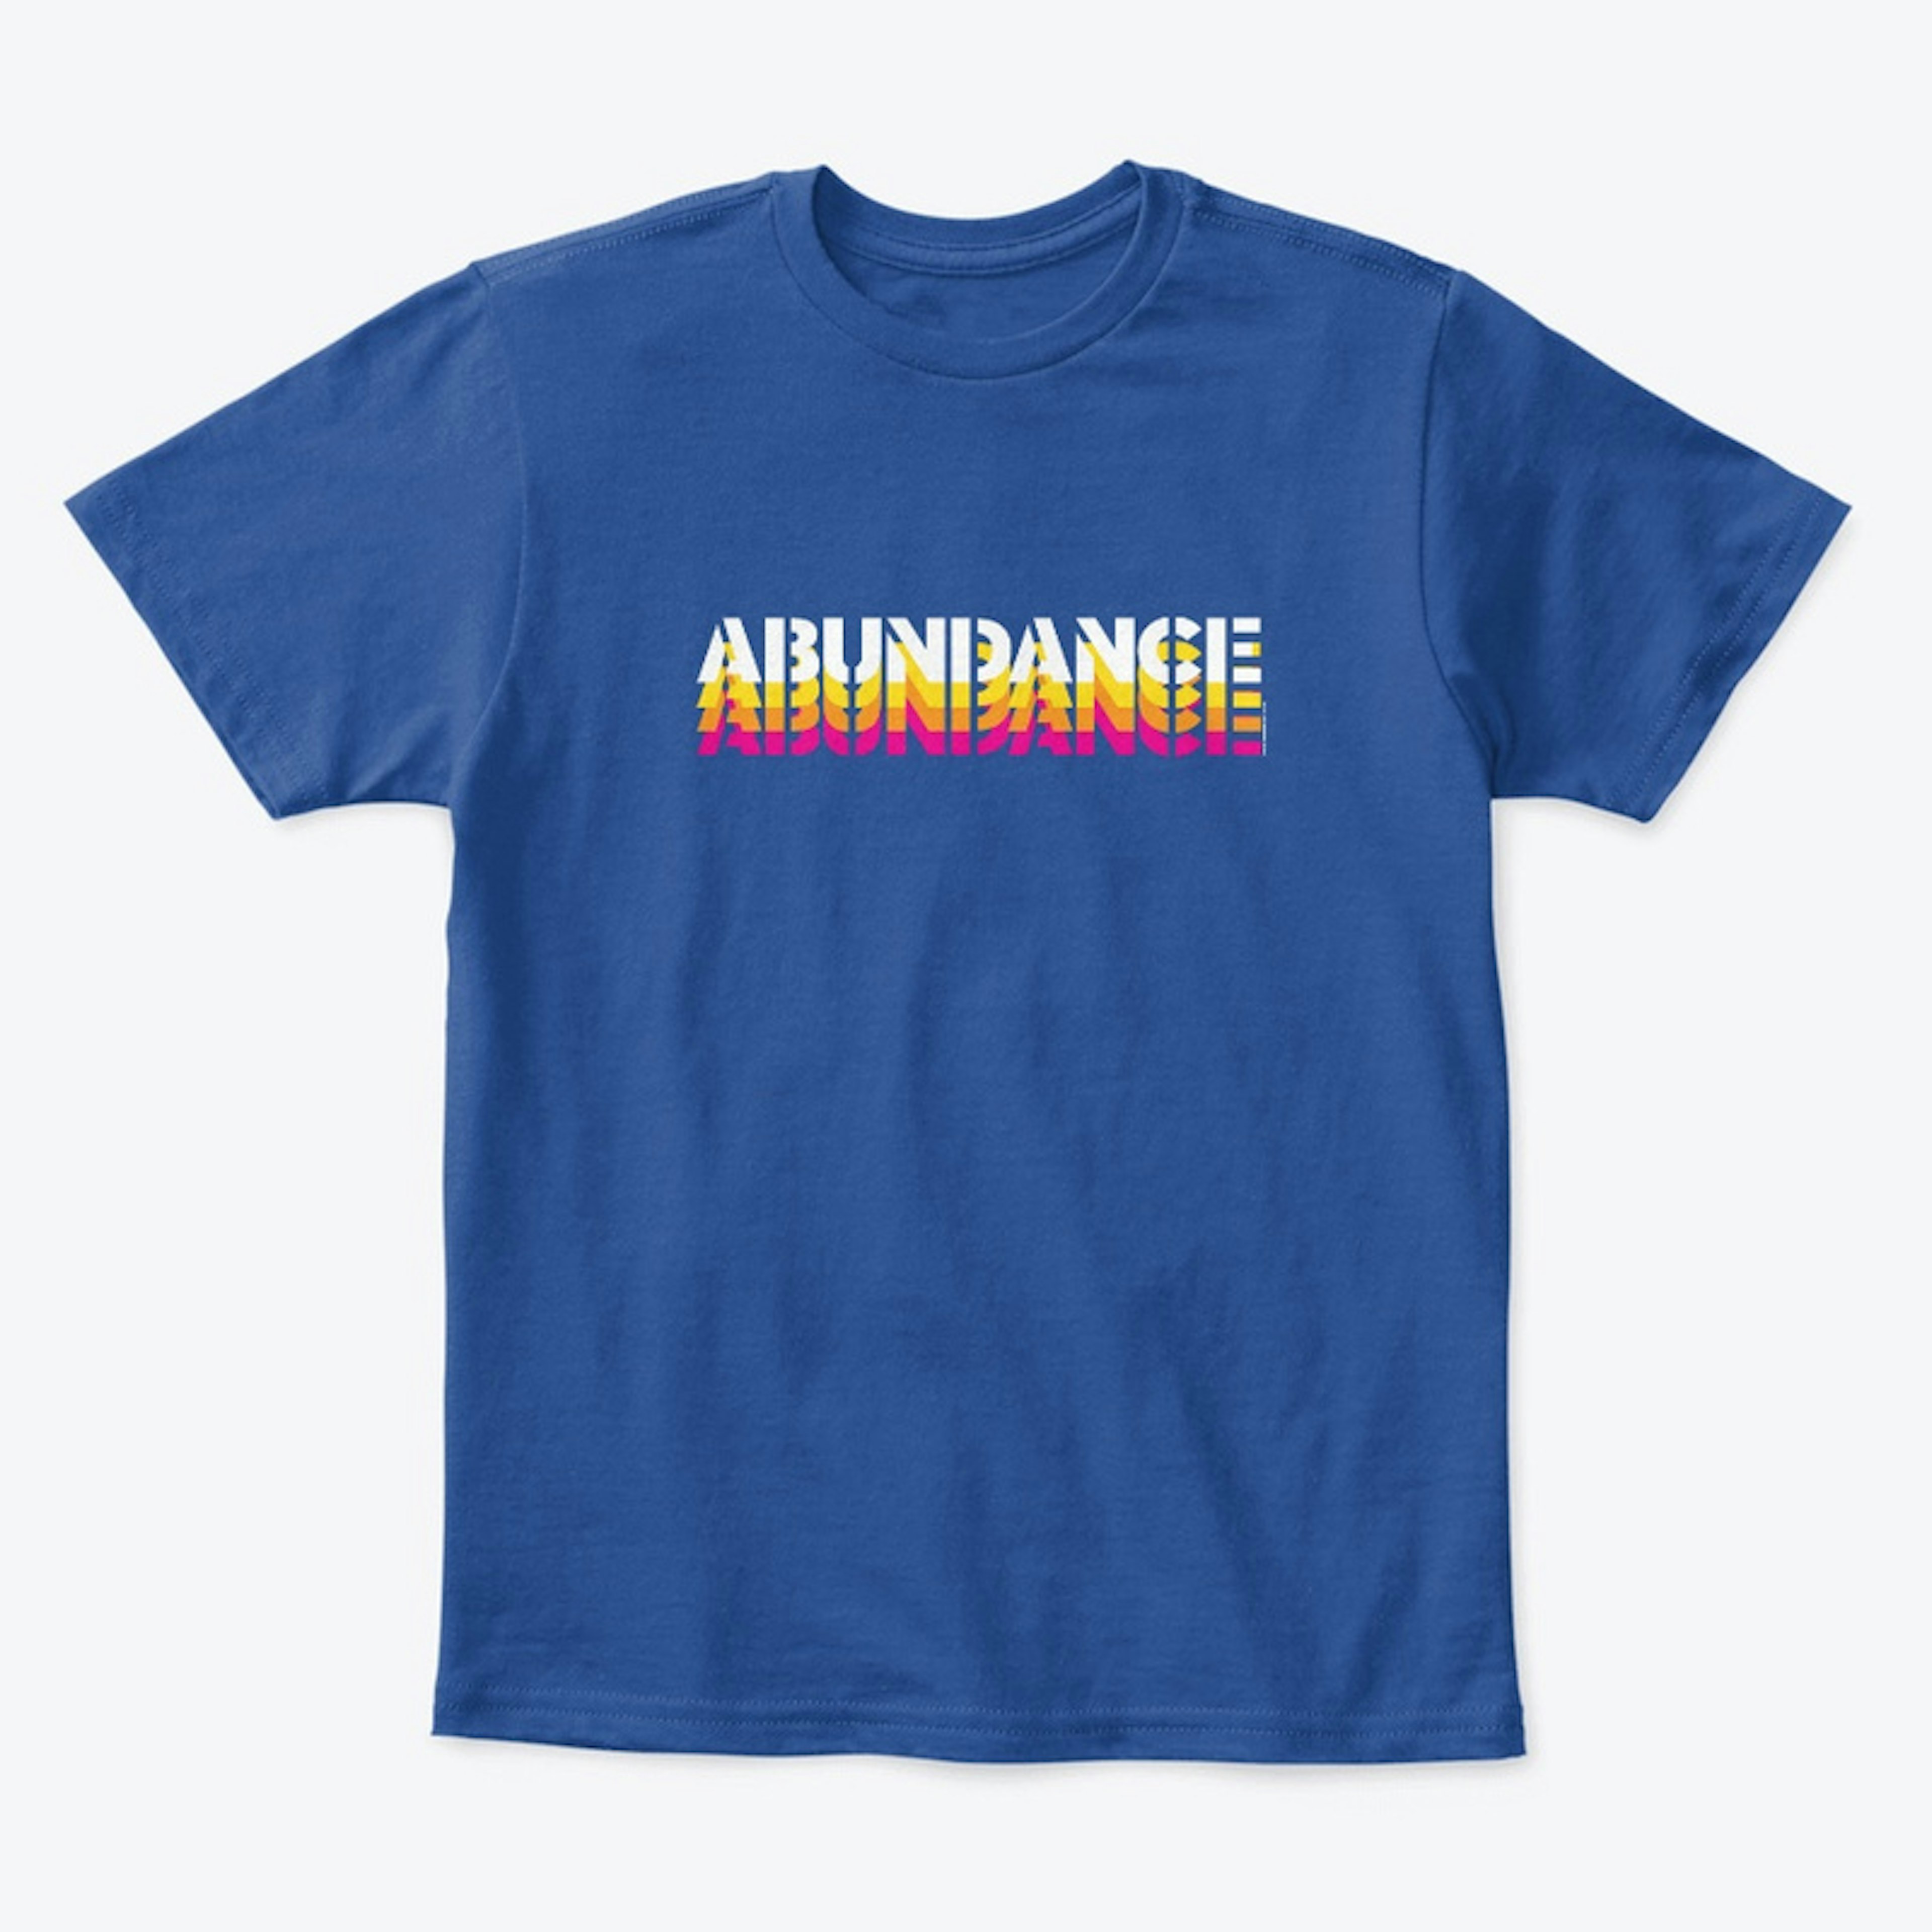 ABUNDANCE!! by artbymags